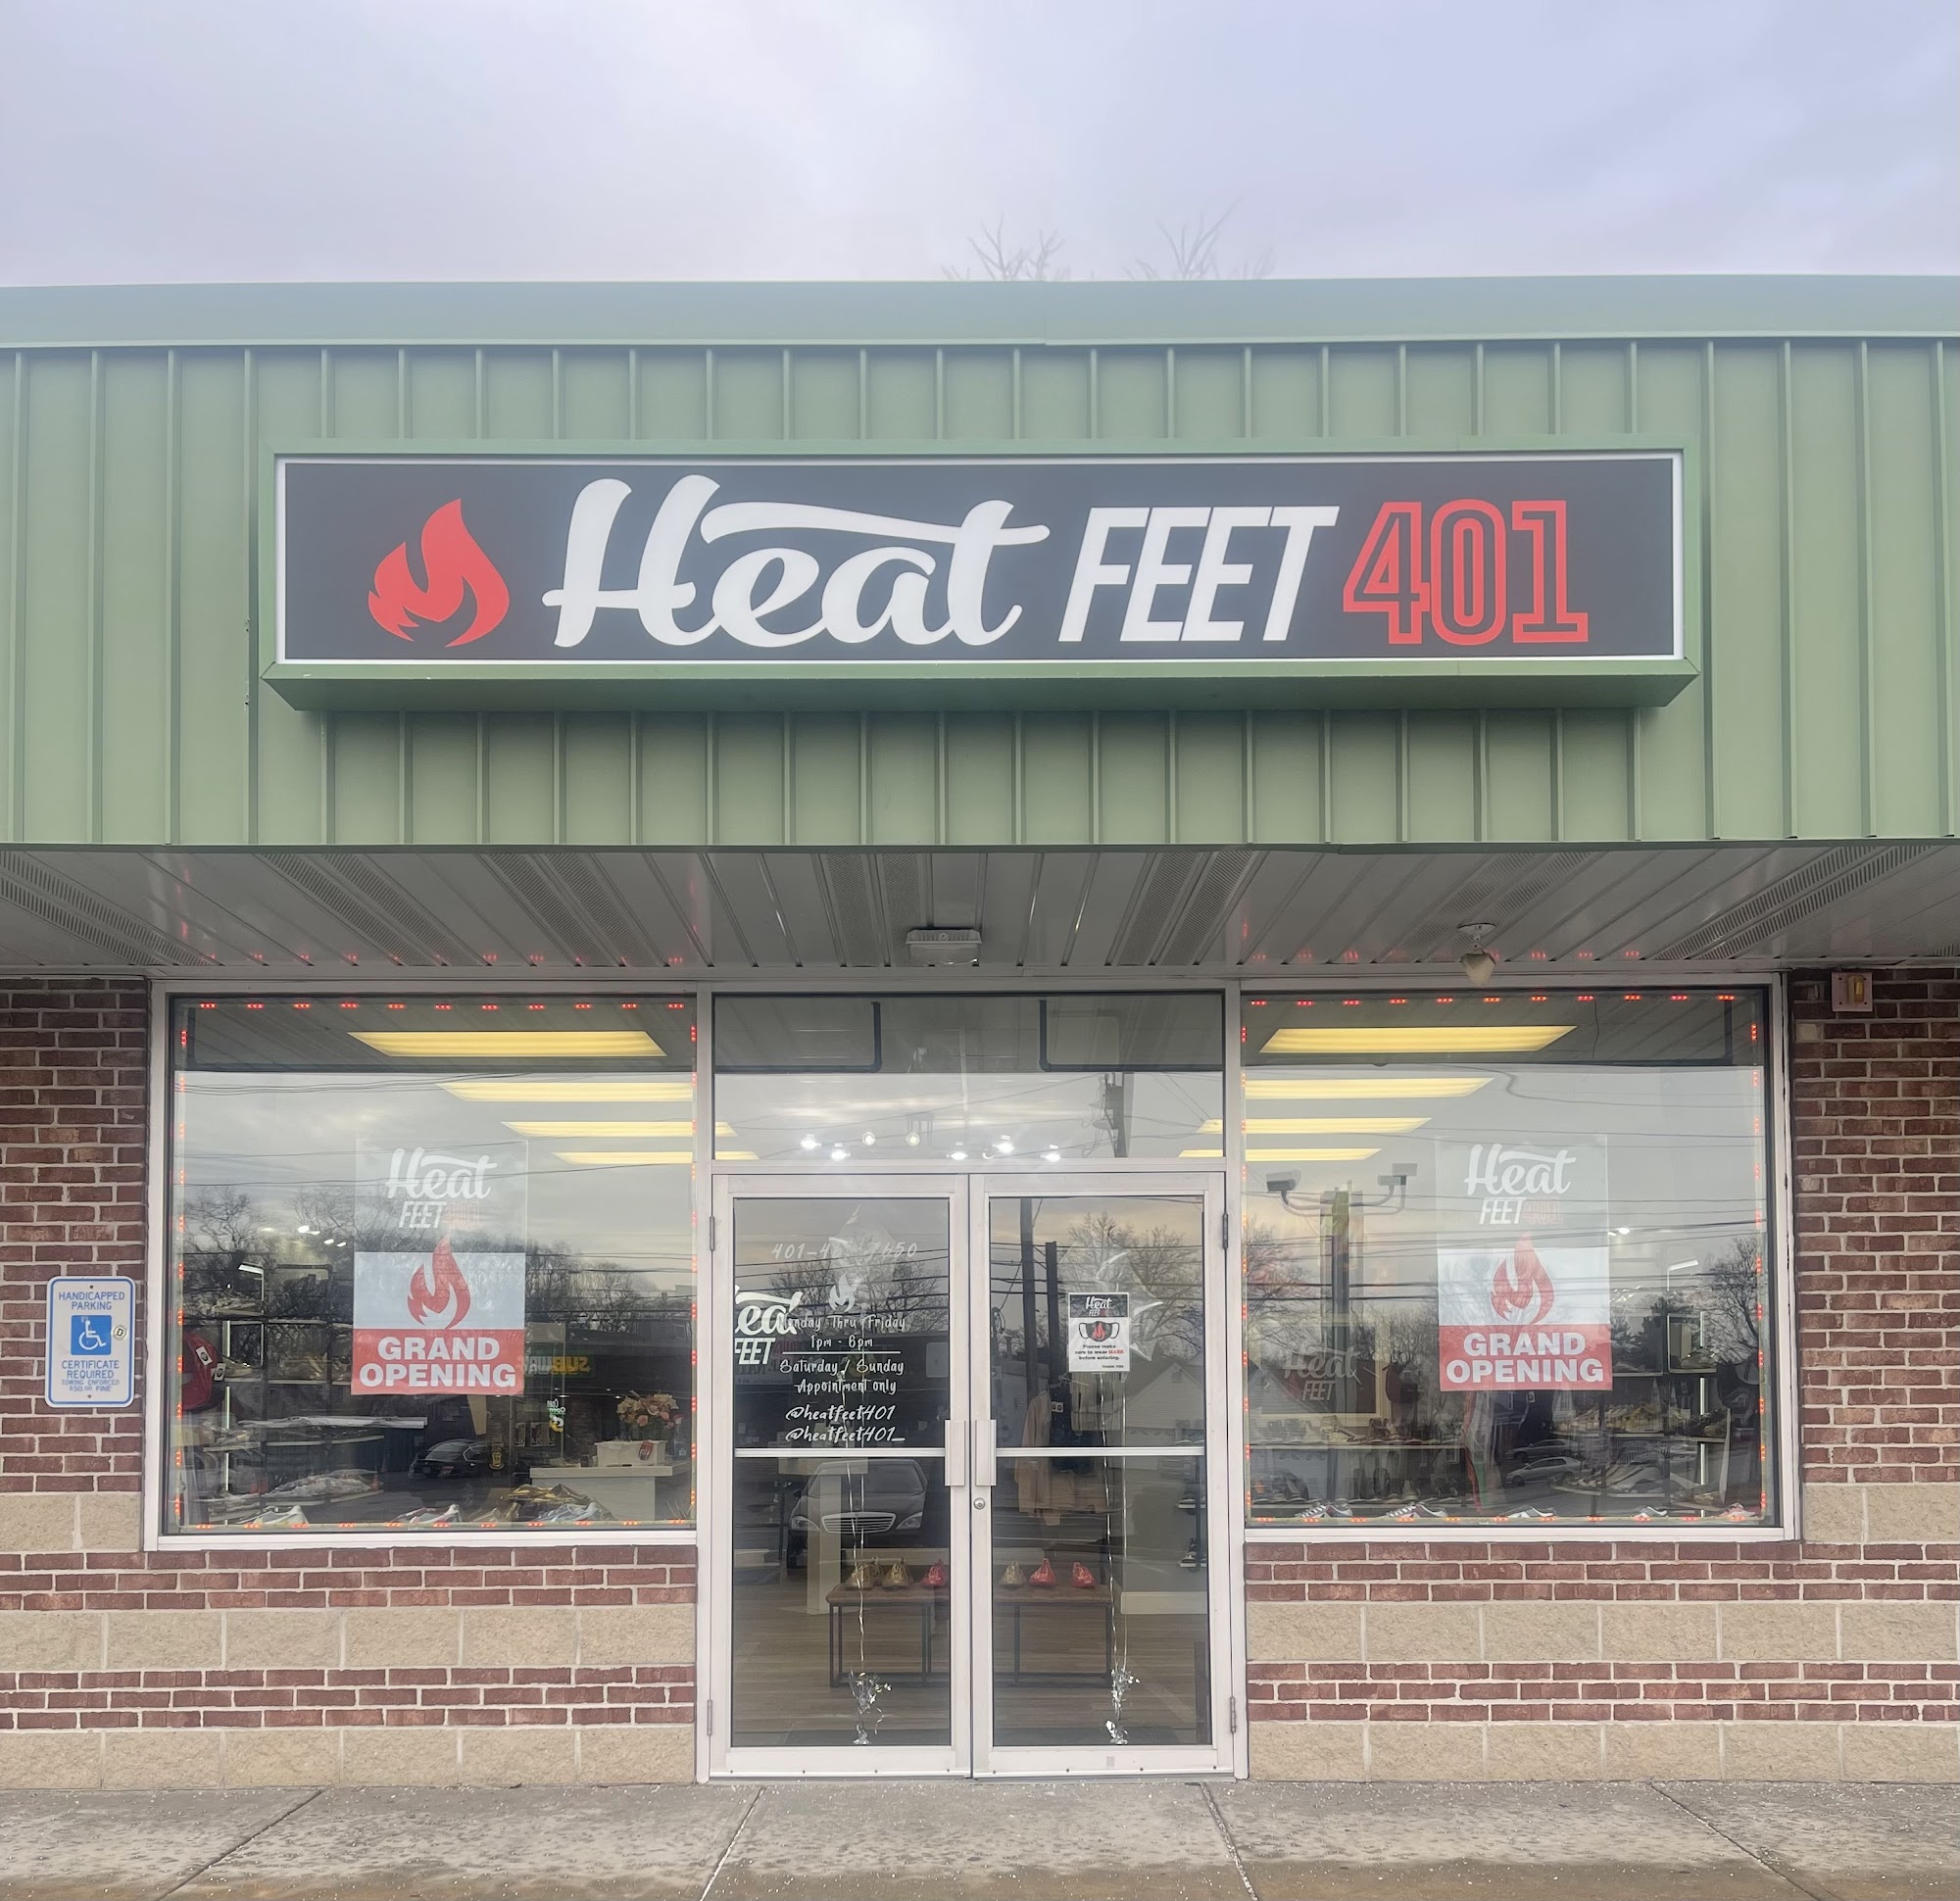 HeatFeet401